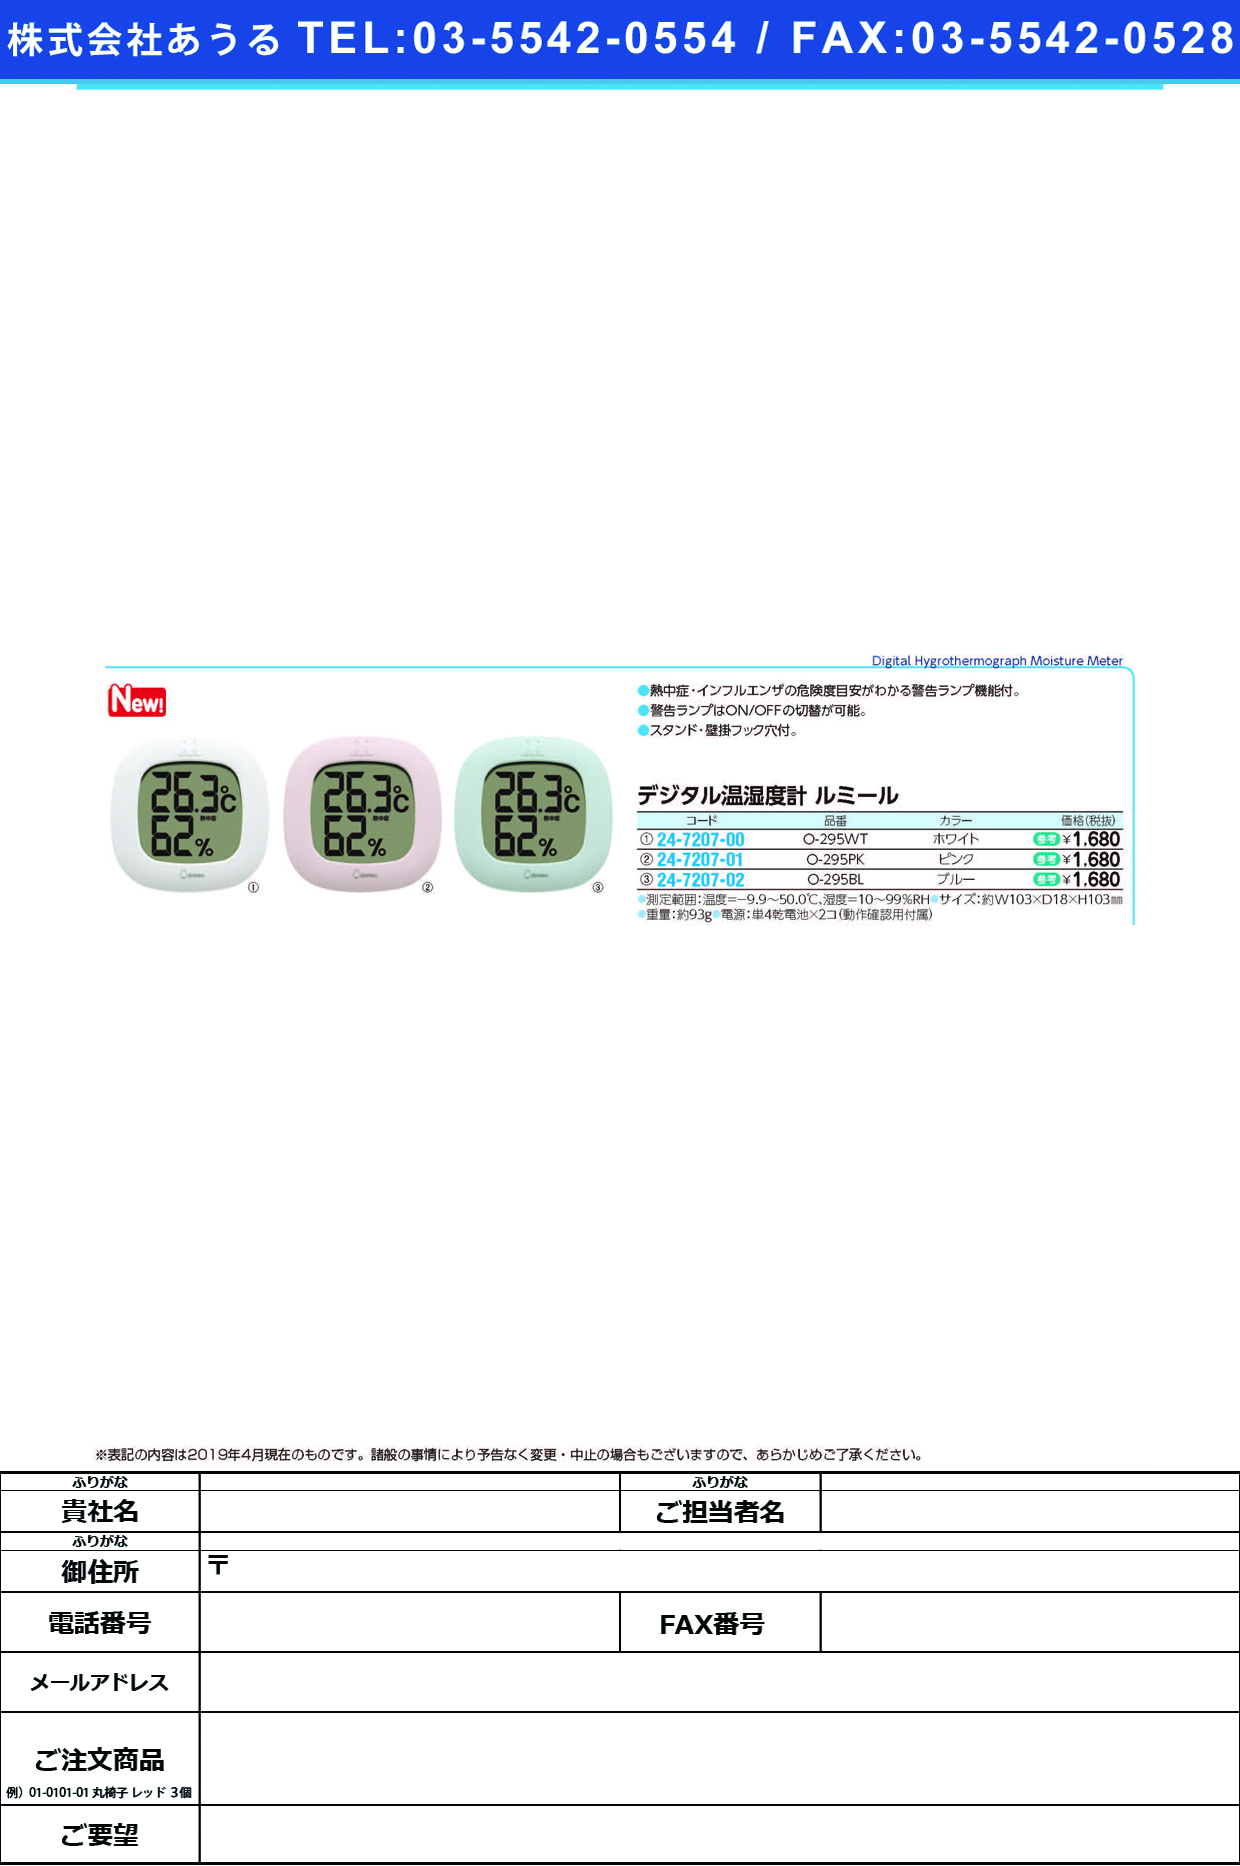 (24-7207-00)デジタル温湿度計　ルミールO-295WT(ﾎﾜｲﾄ) ﾃﾞｼﾞﾀﾙｵﾝｼﾂﾄﾞｹｲ ﾙﾐｰﾙ(ドリテック)【1個単位】【2019年カタログ商品】